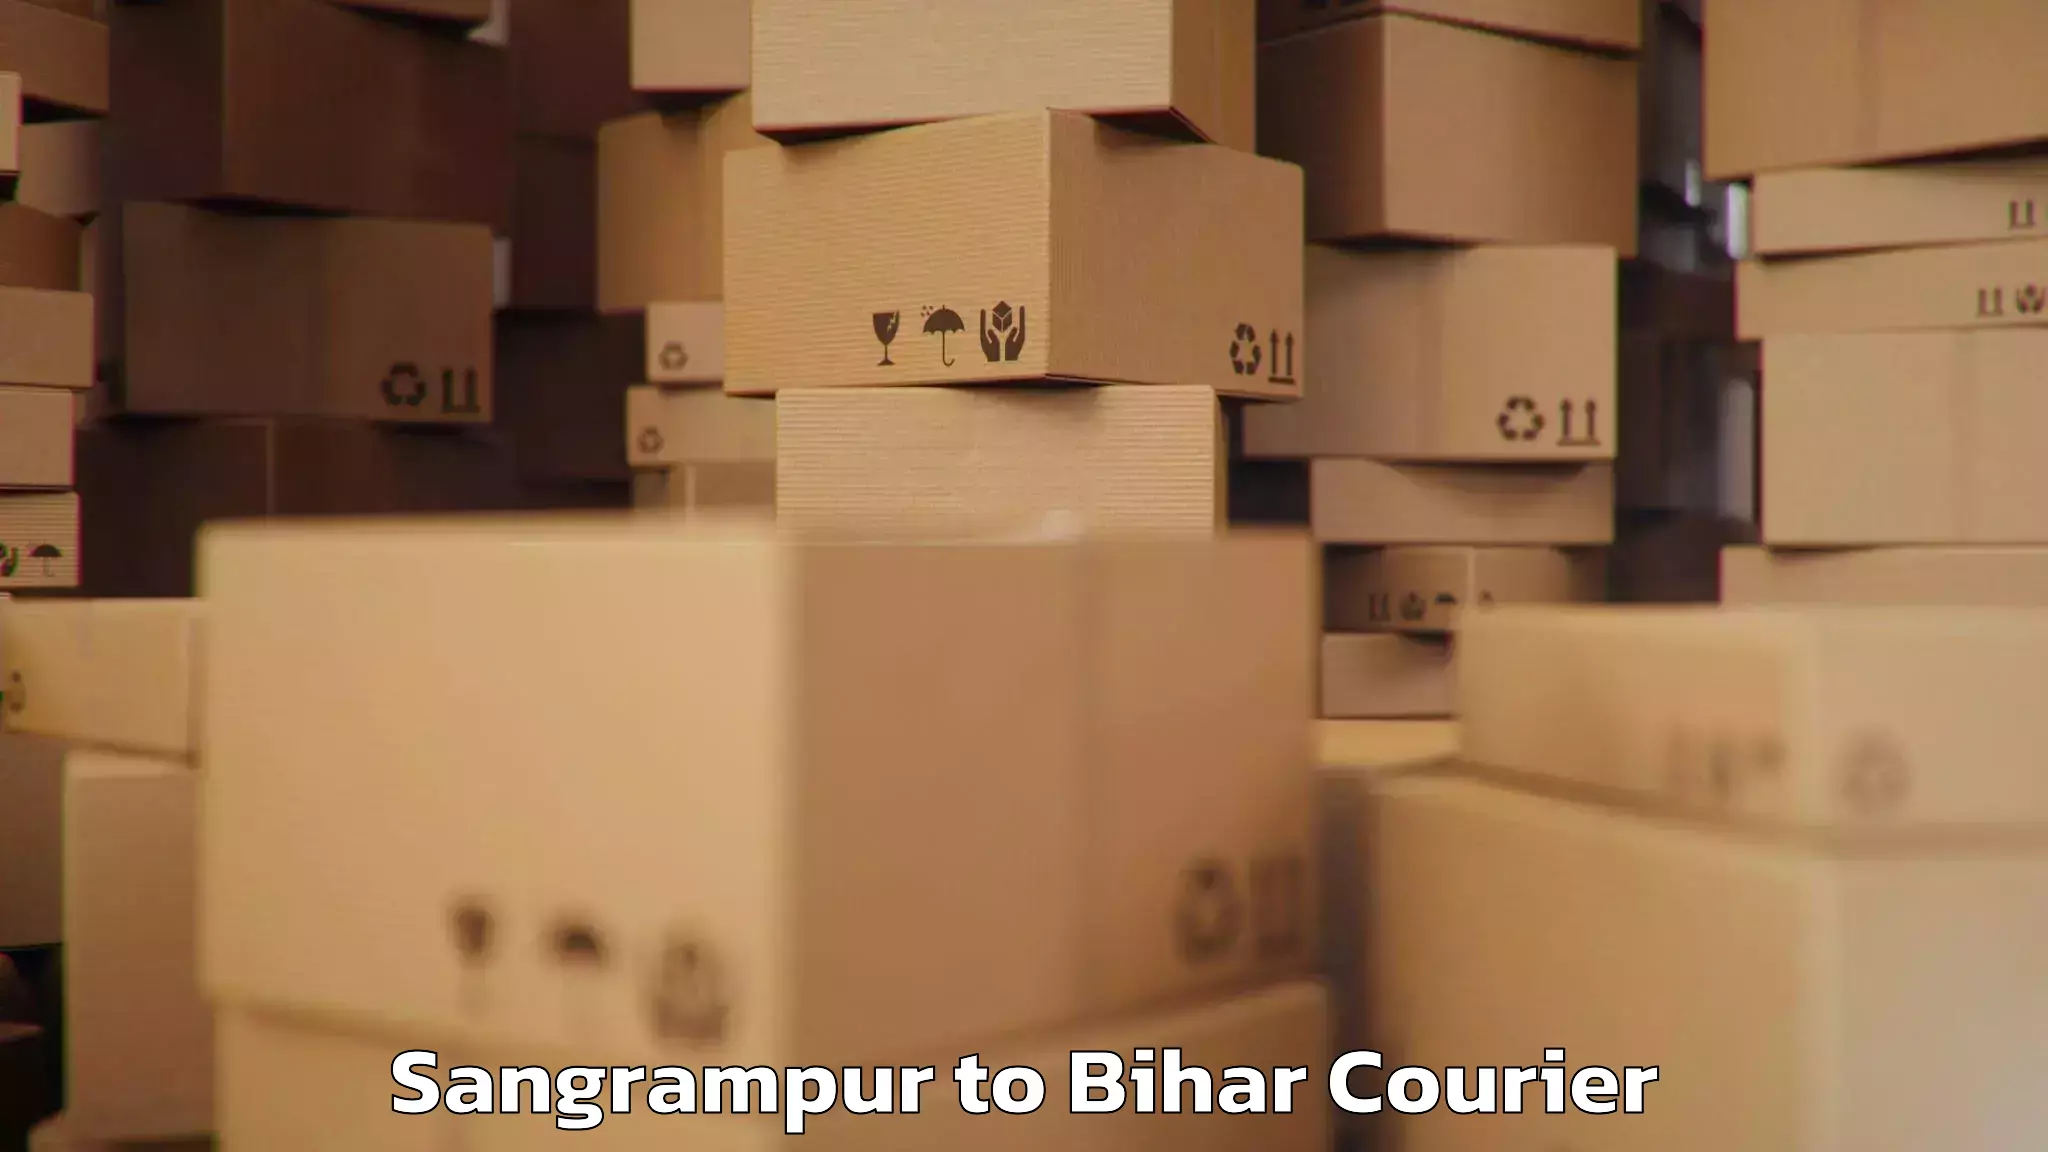 Baggage transport management Sangrampur to Sangrampur